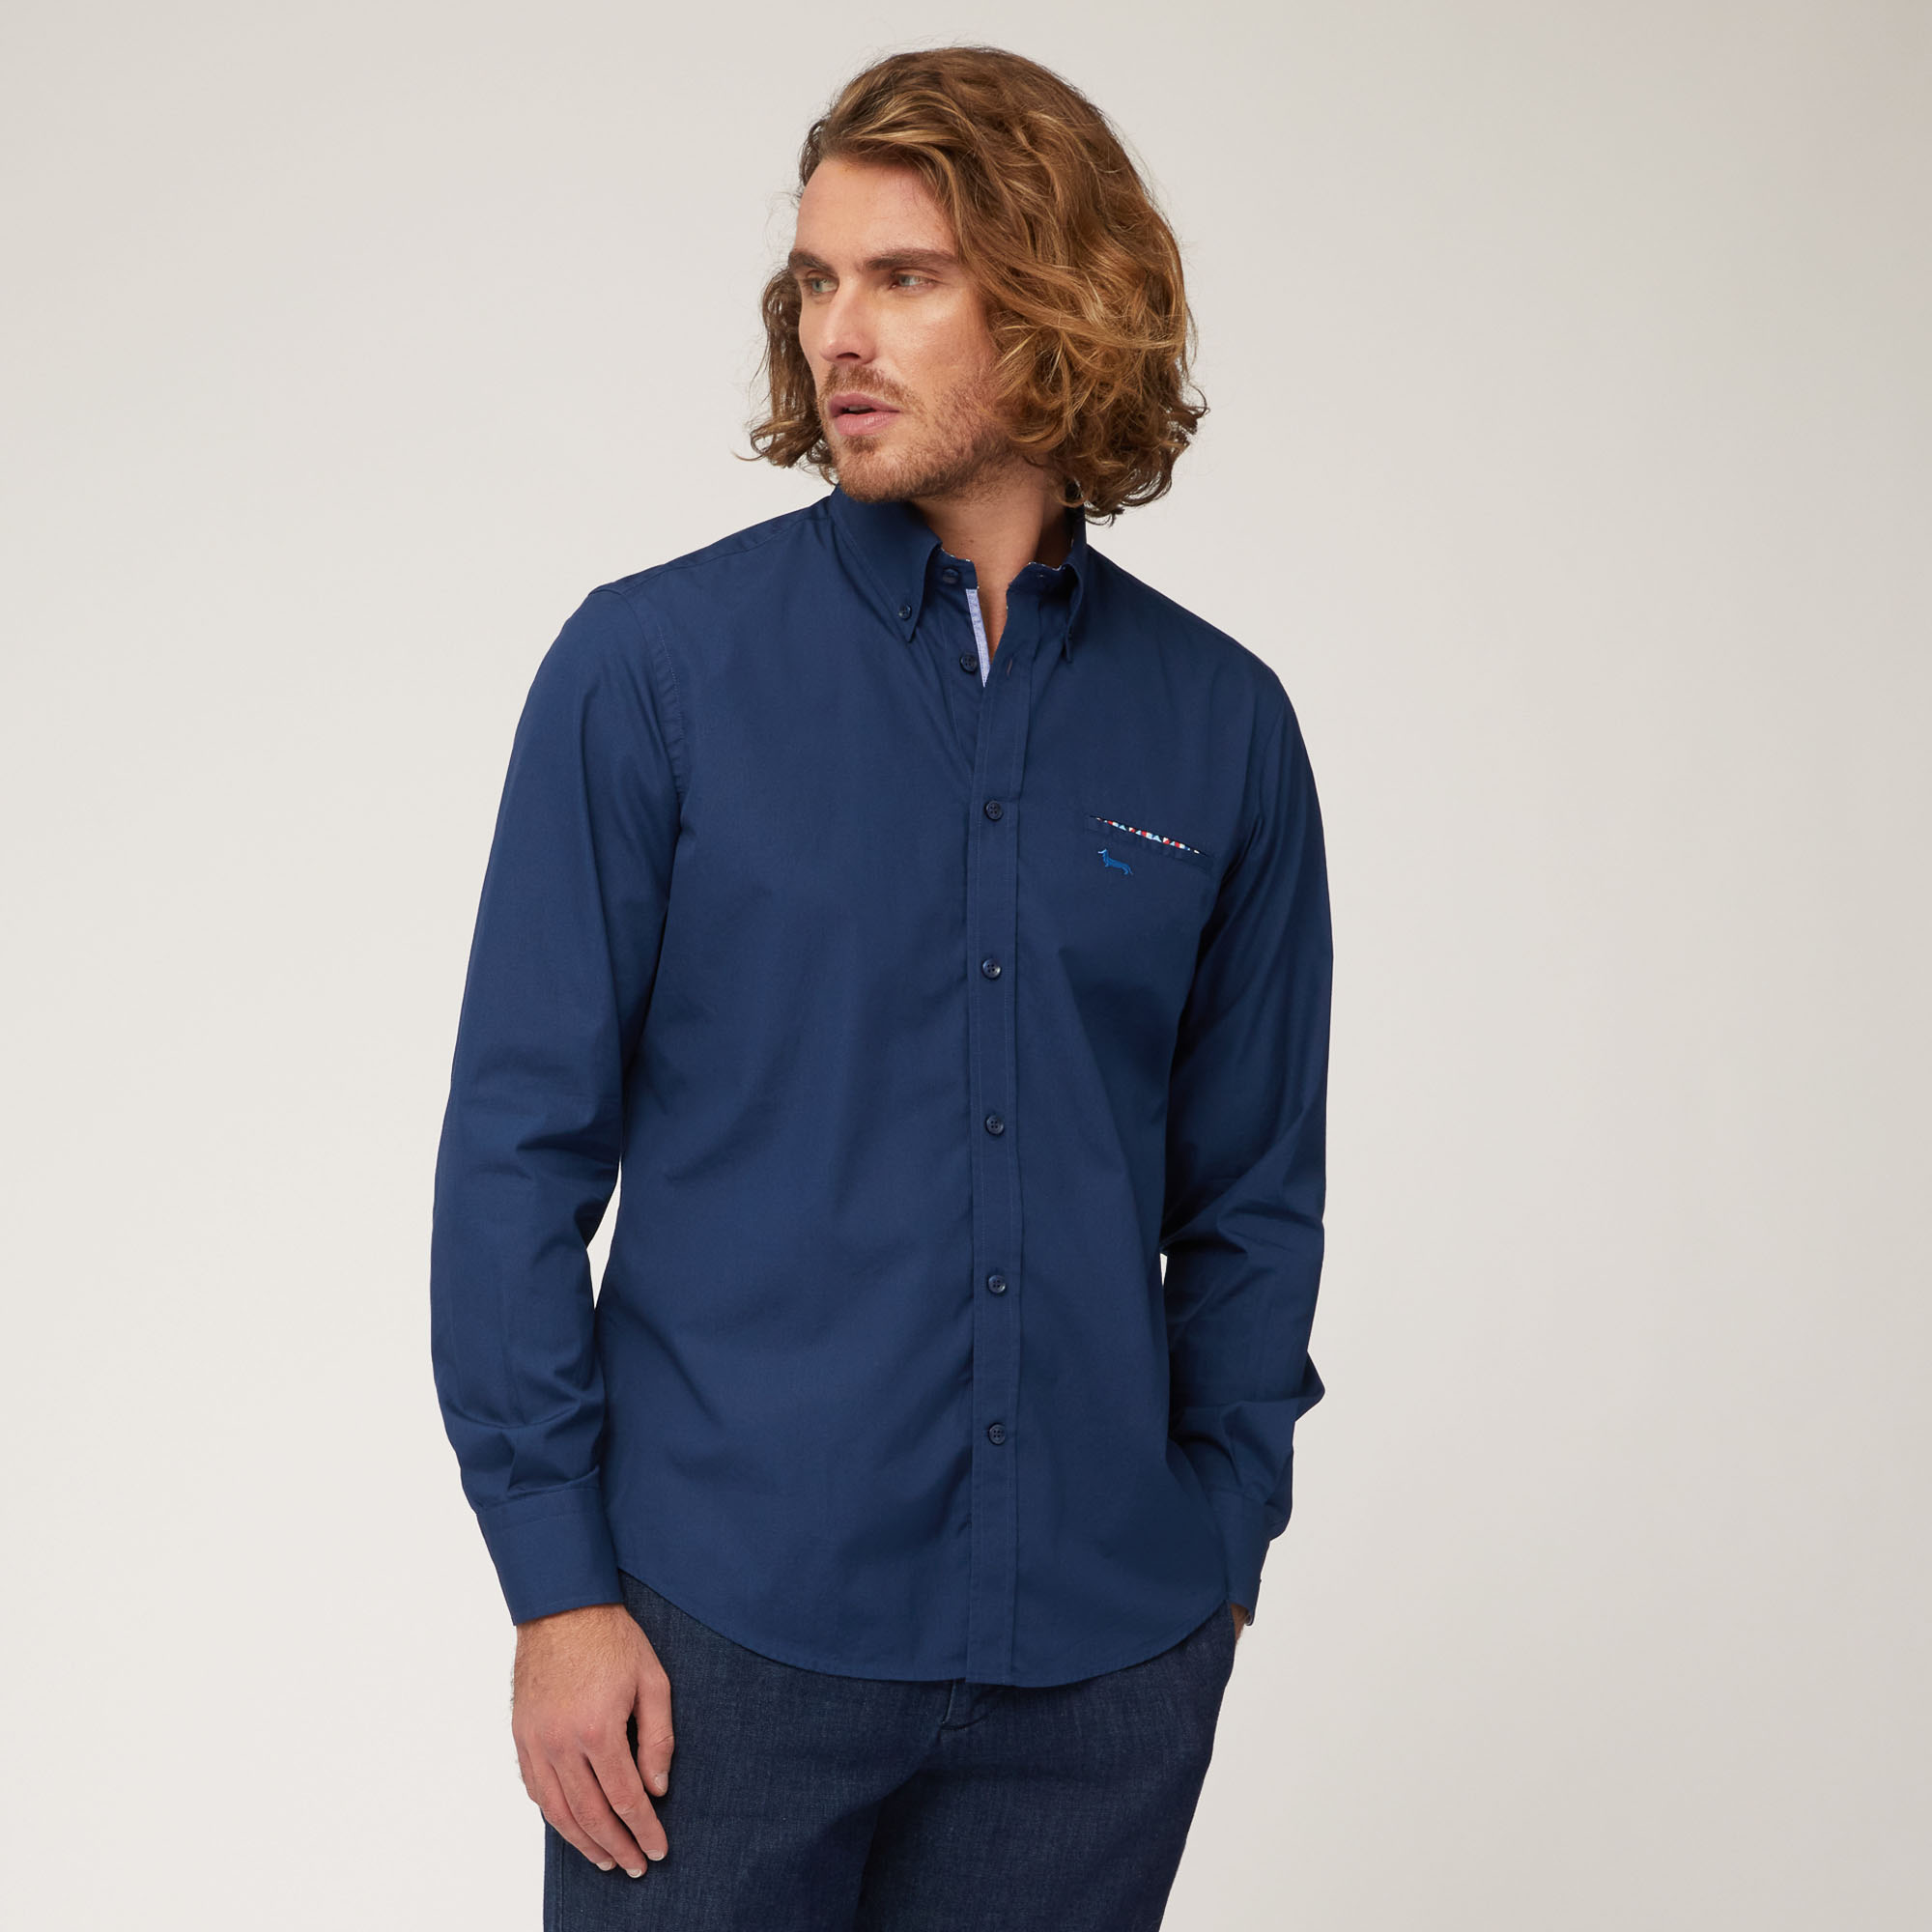 Camicia In Cotone Con Taschino, Light Blue, large